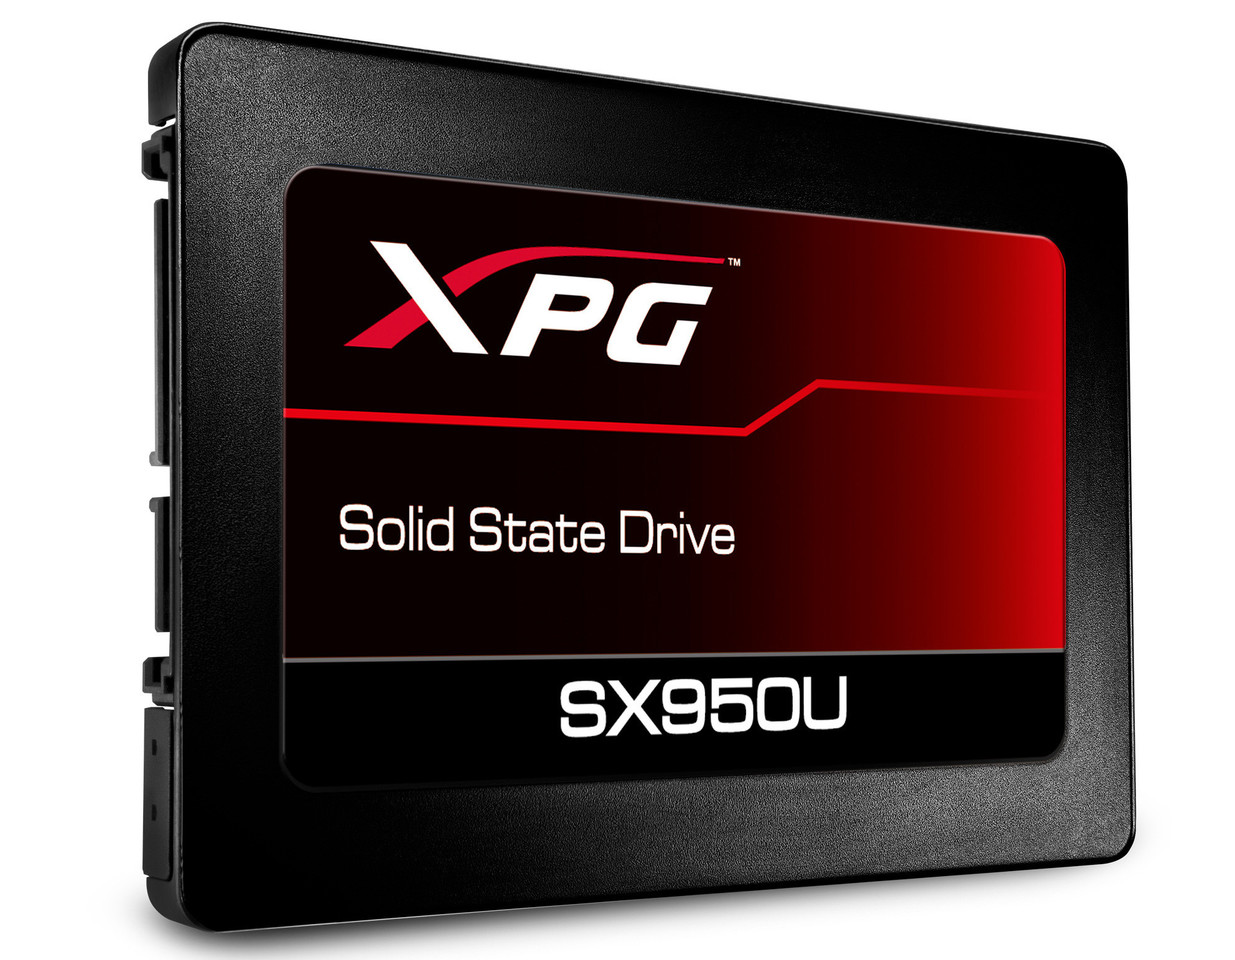 ADATA lanza su nueva serie de SSDs gaming XPG SX950U